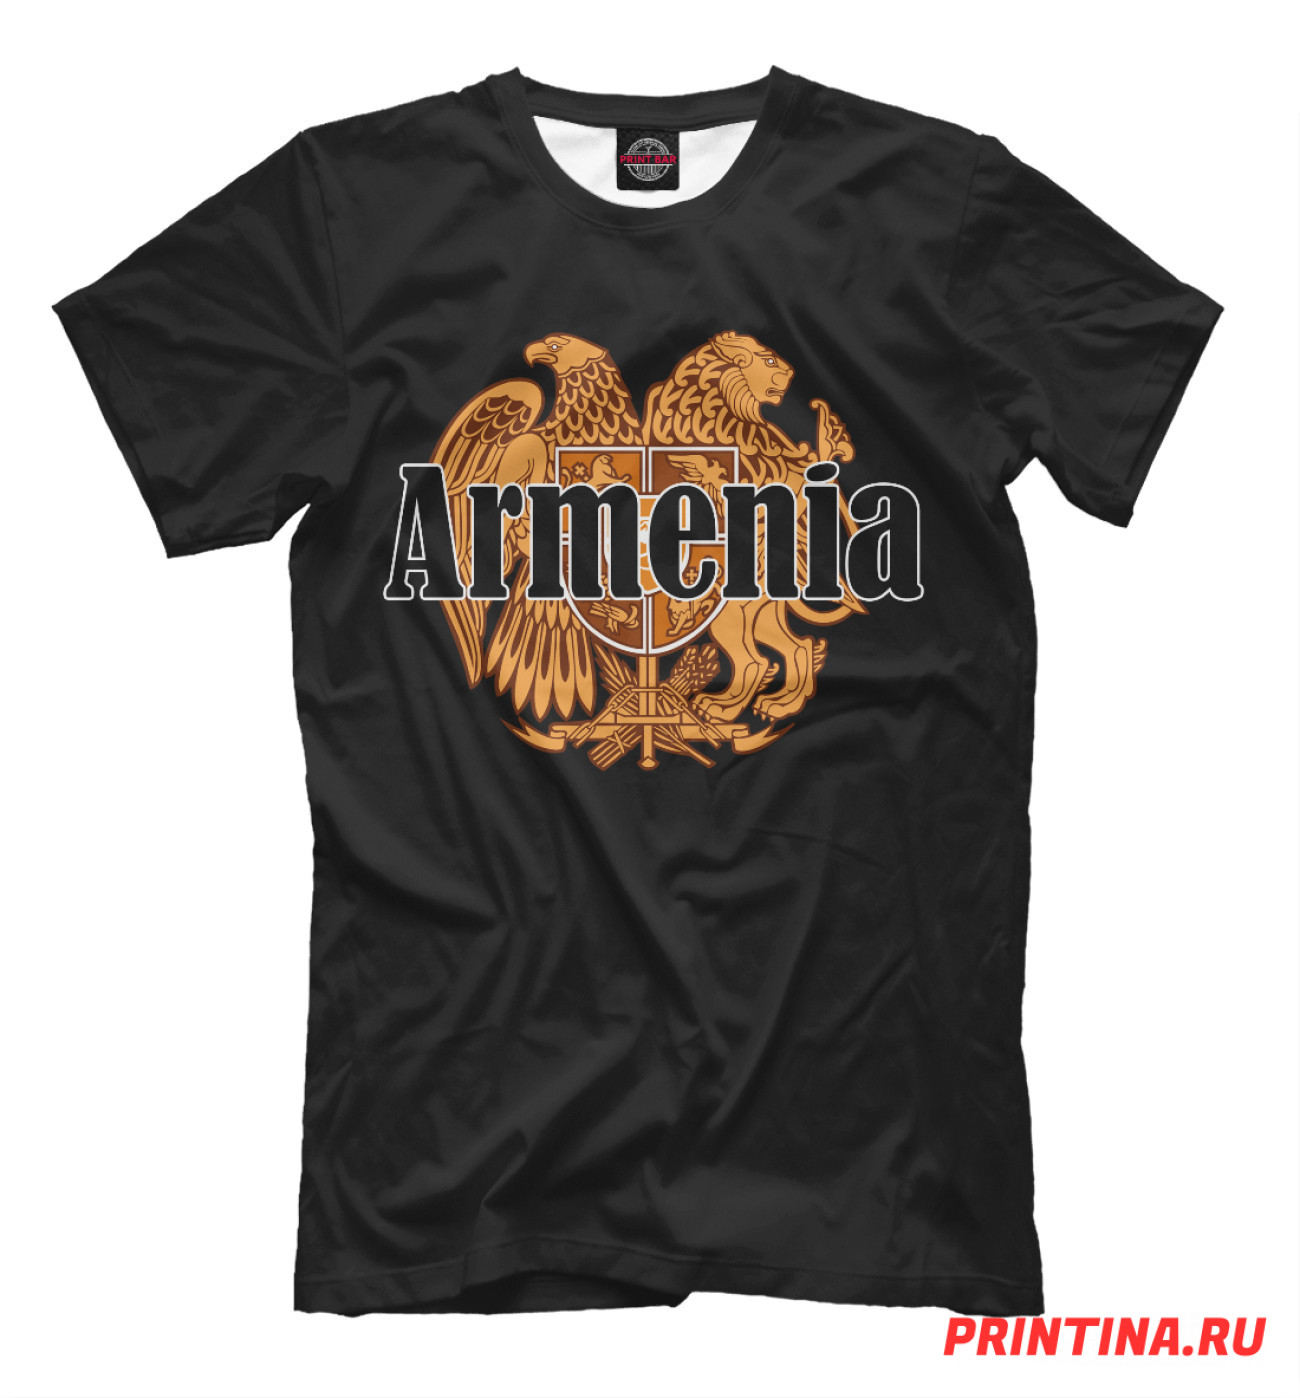 Мужская Футболка Armenia, артикул: CTS-316500-fut-2